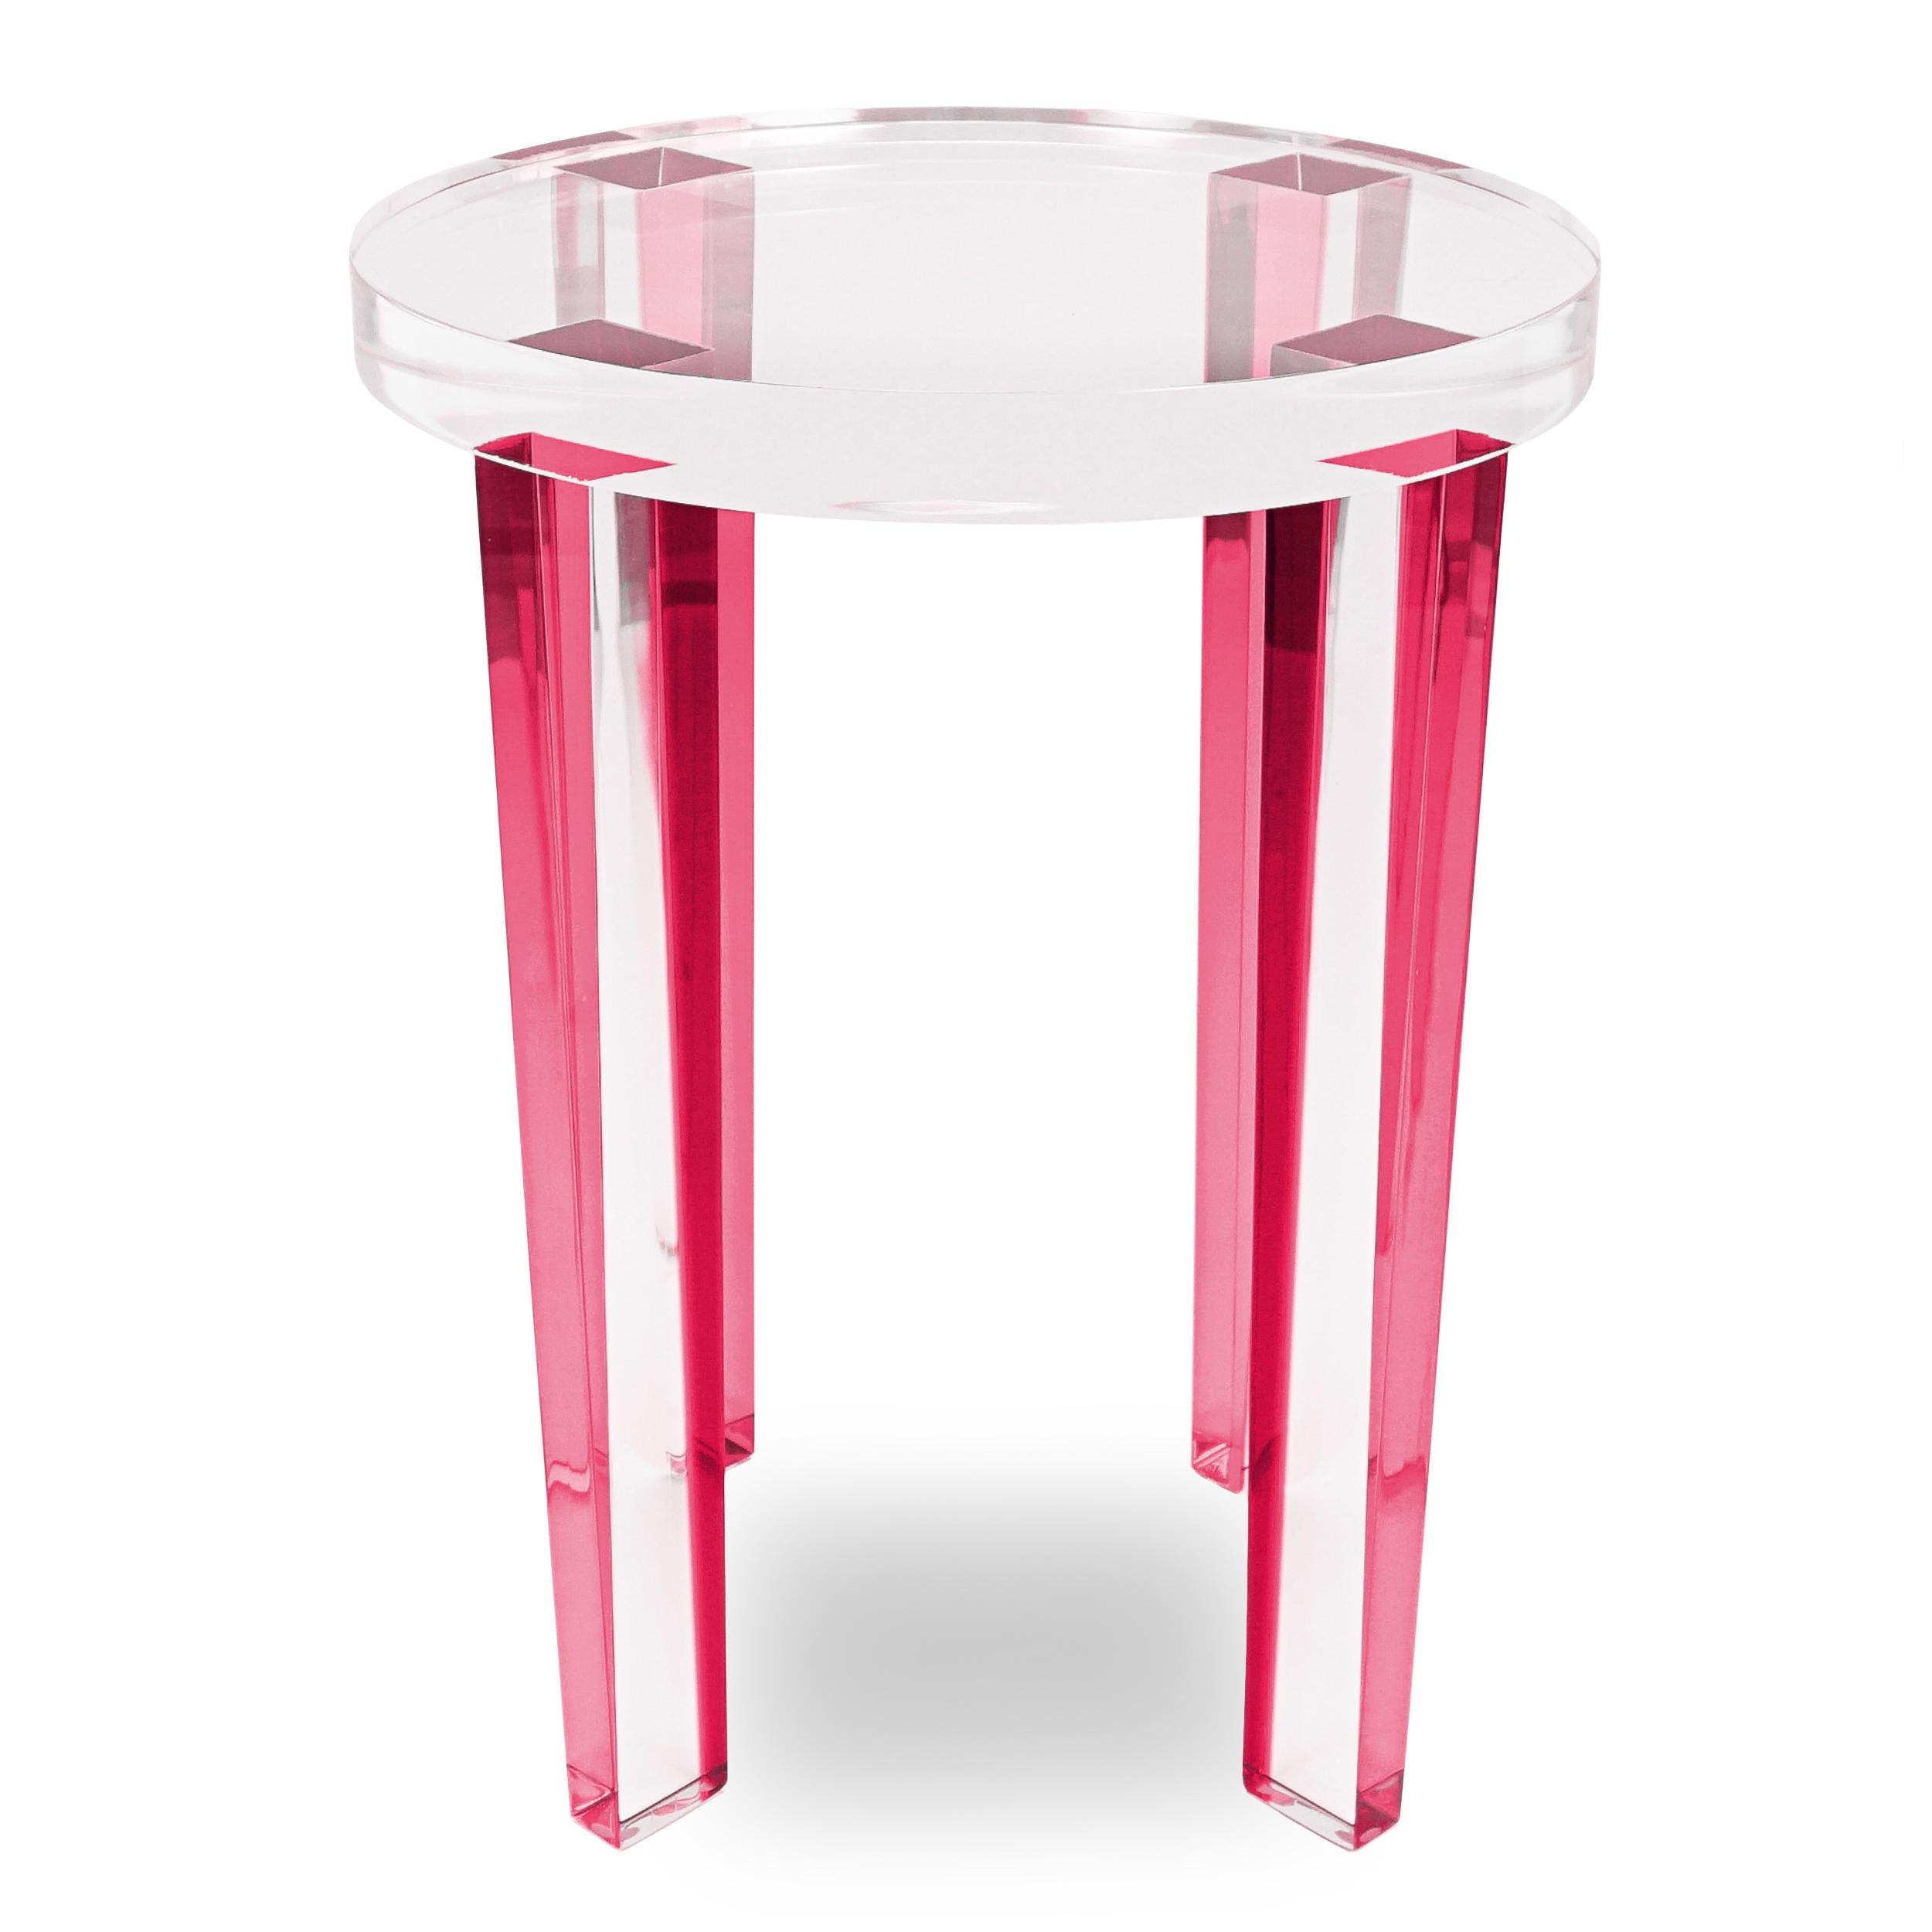 Dieser runde Beistelltisch aus Lucite besteht aus pinkfarbenen Lucite-Beinen und einer klaren Lucite-Platte. Dieser kleine Beistelltisch reflektiert das Licht und sorgt für eine große Wirkung.

Gesamt: 15 